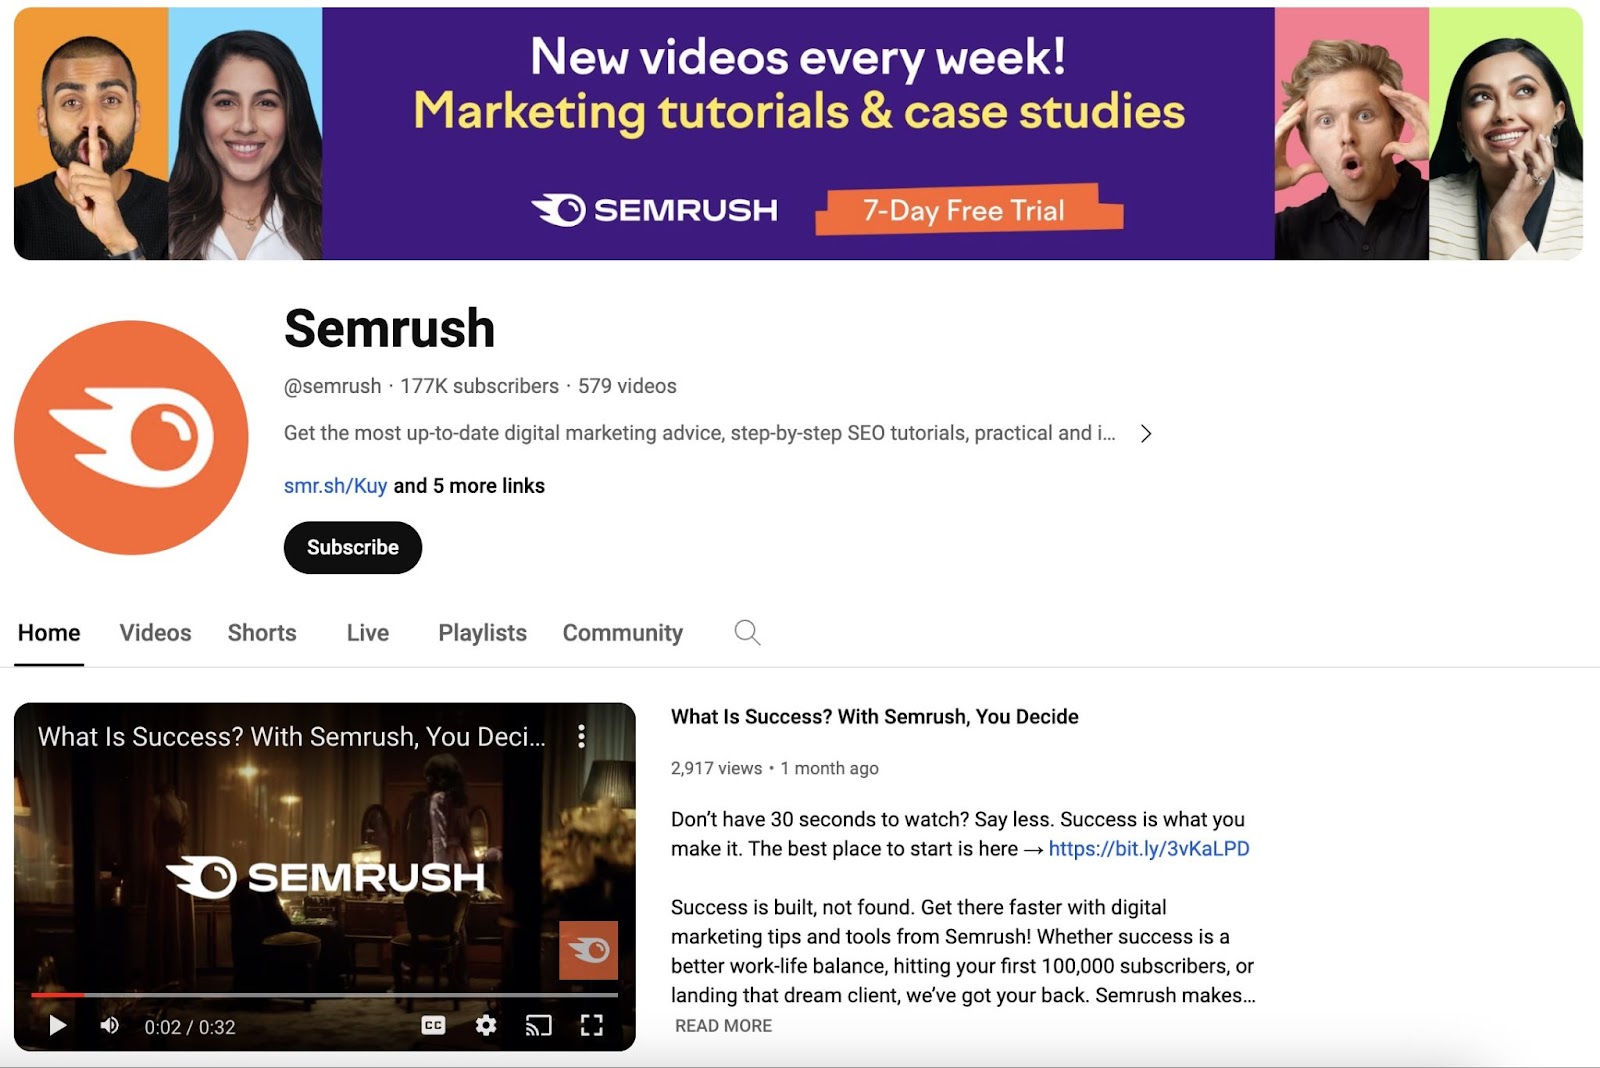 Semrush's YouTube channel